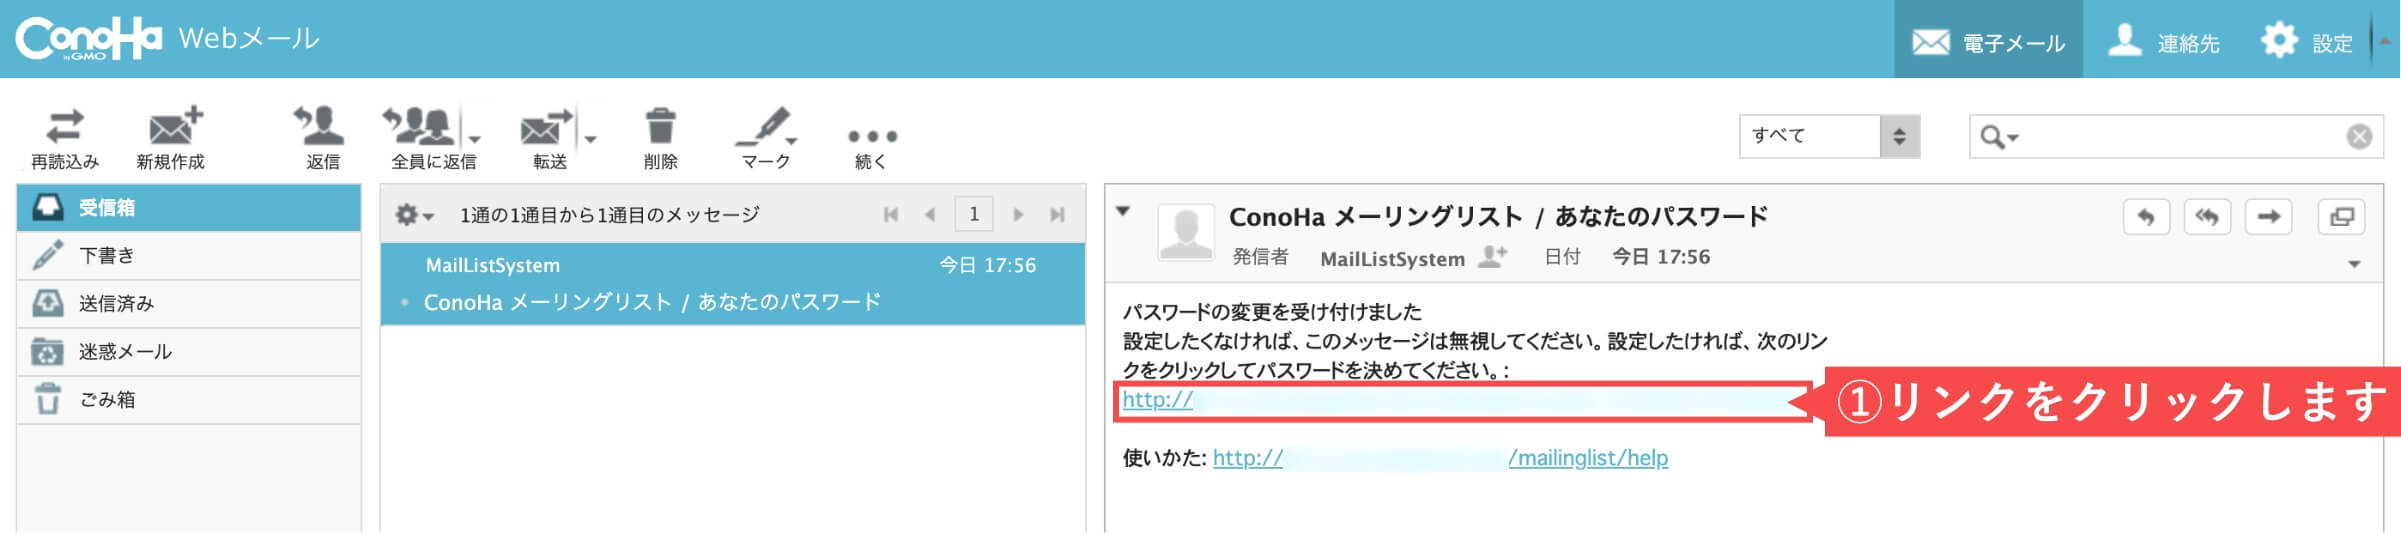 ConoHa WINGからのメーリングリストアカウント登録メール確認画面